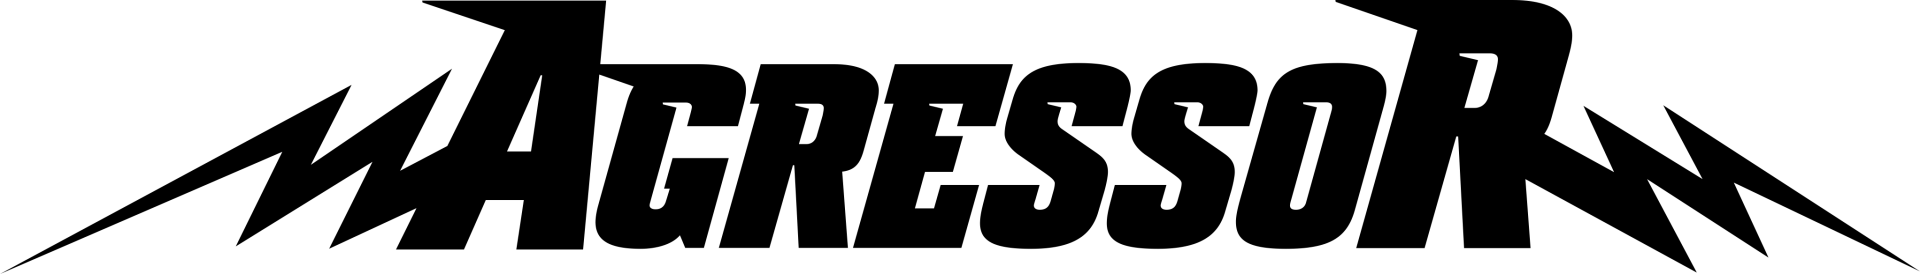 Avatyre-Agressor-logo.png